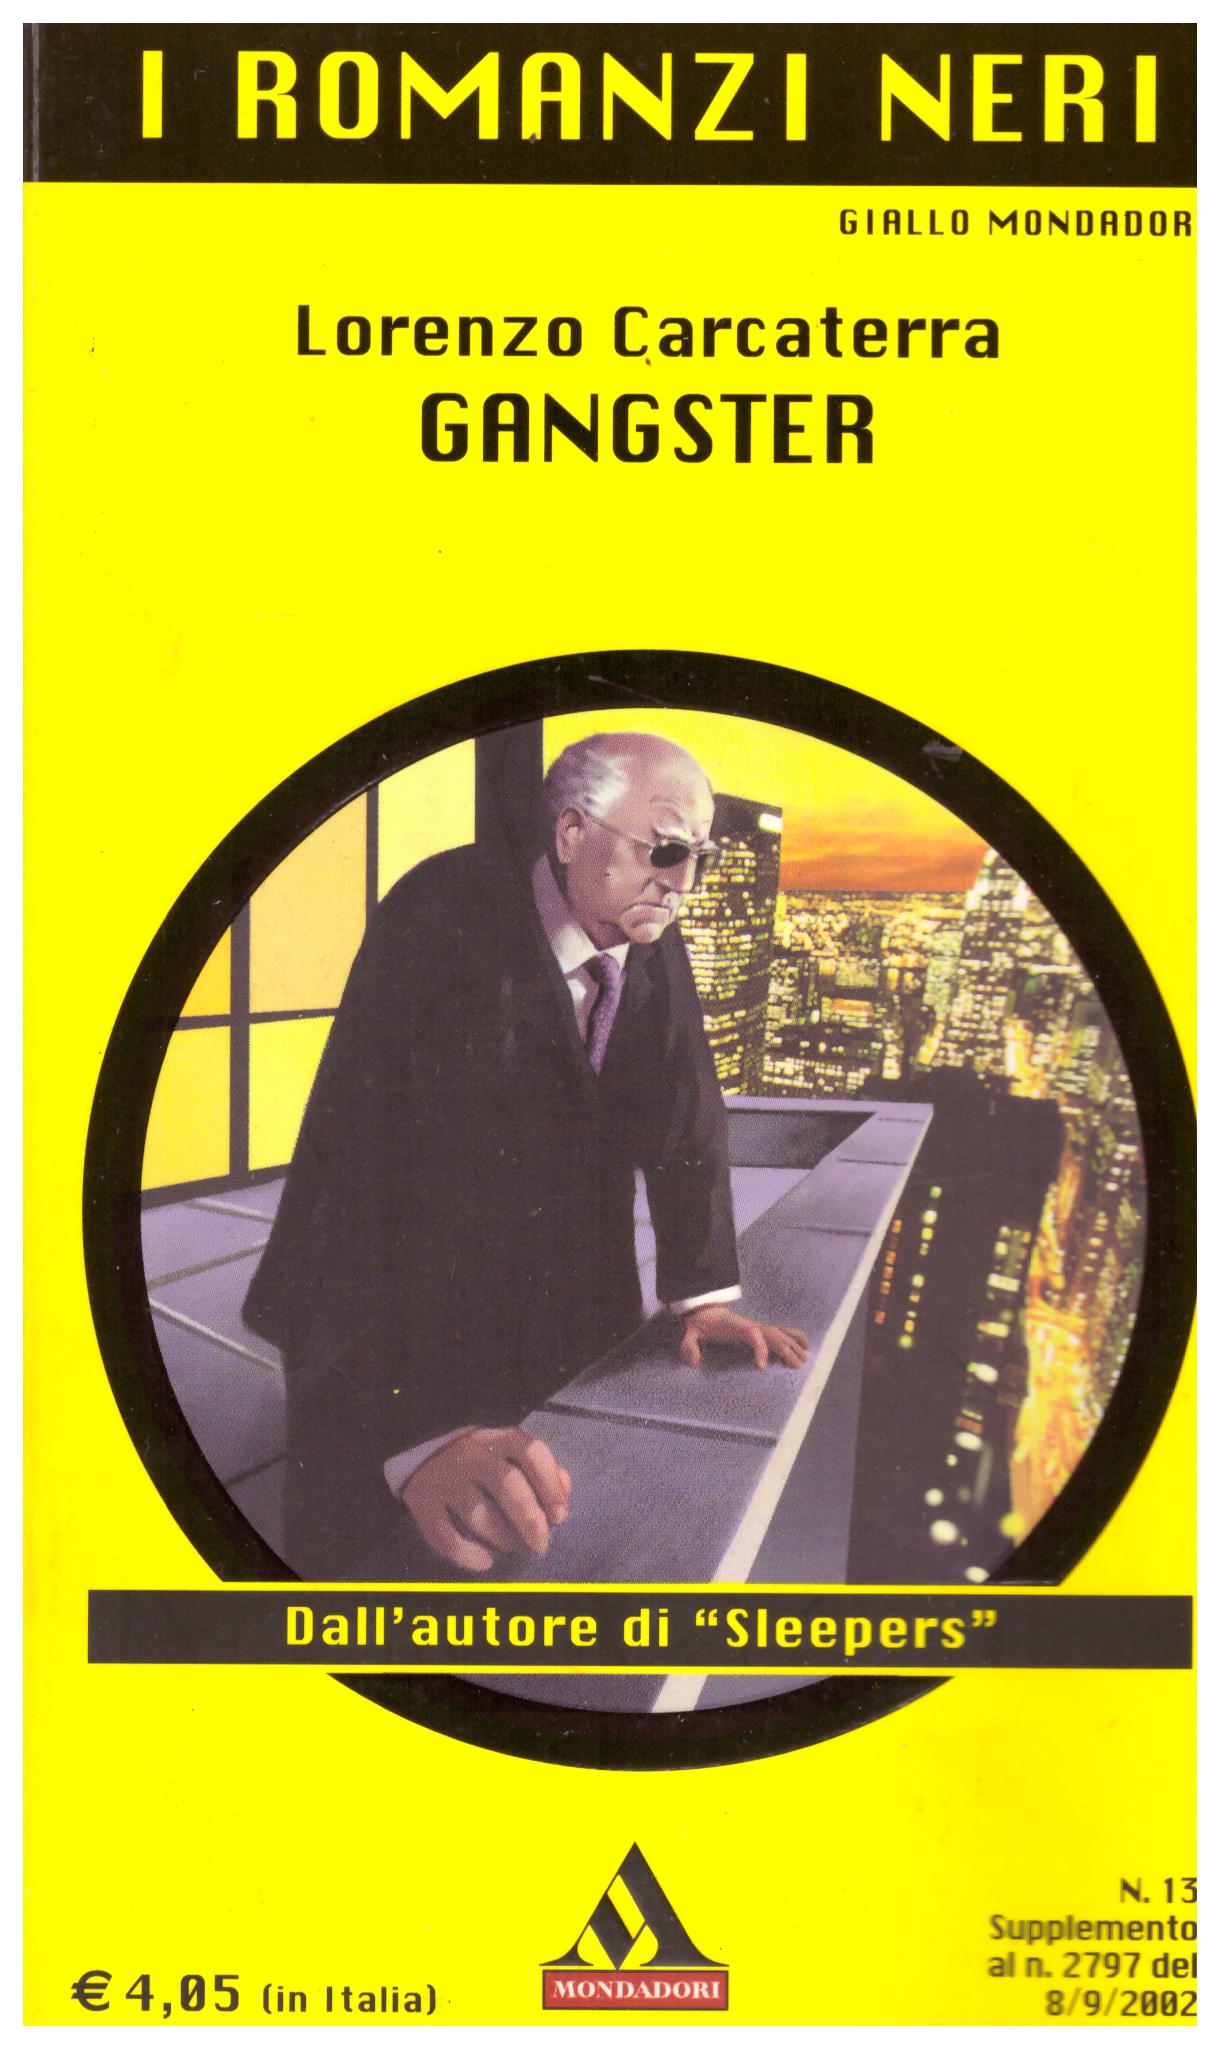 Titolo: Gangster Autore: Lorenzo Carcaterra Editore: Mondadori, 2002